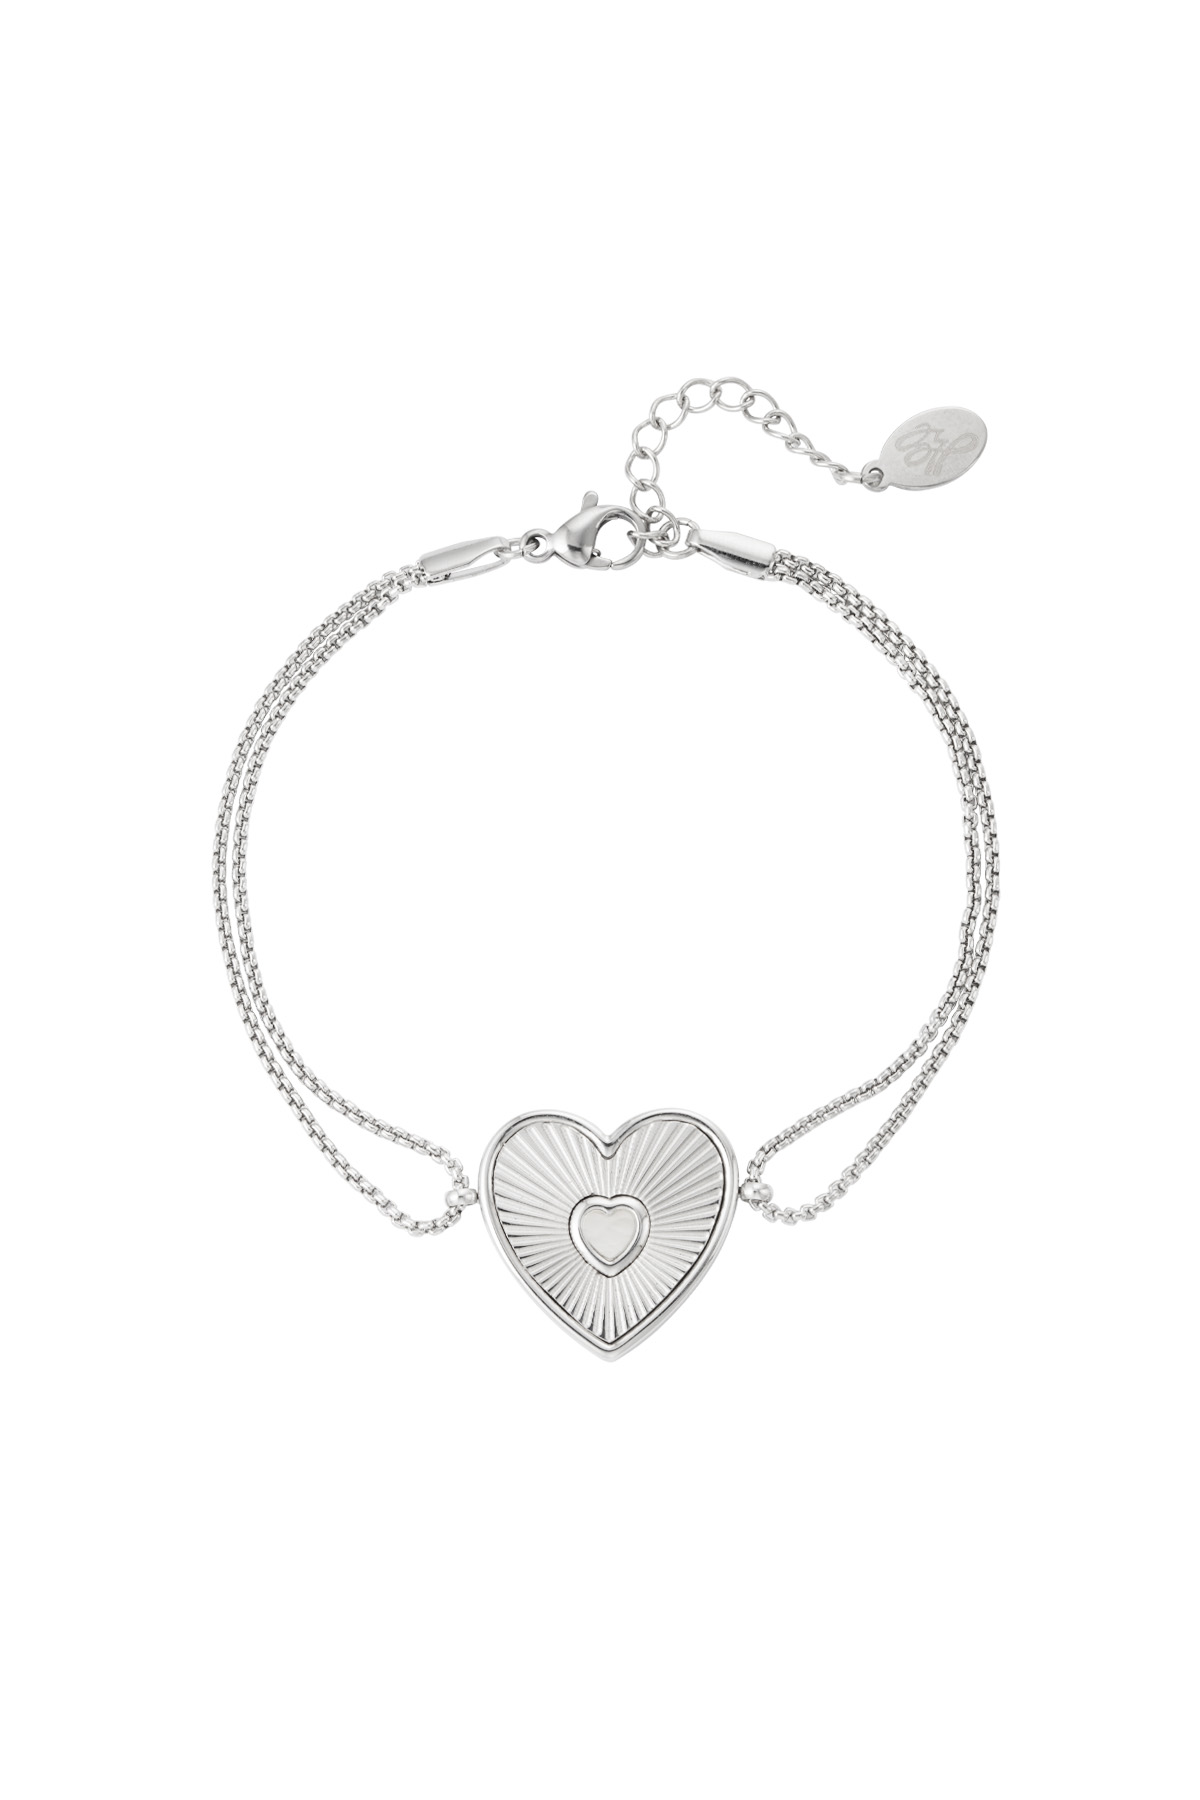 Bracelet lover heart - silver h5 